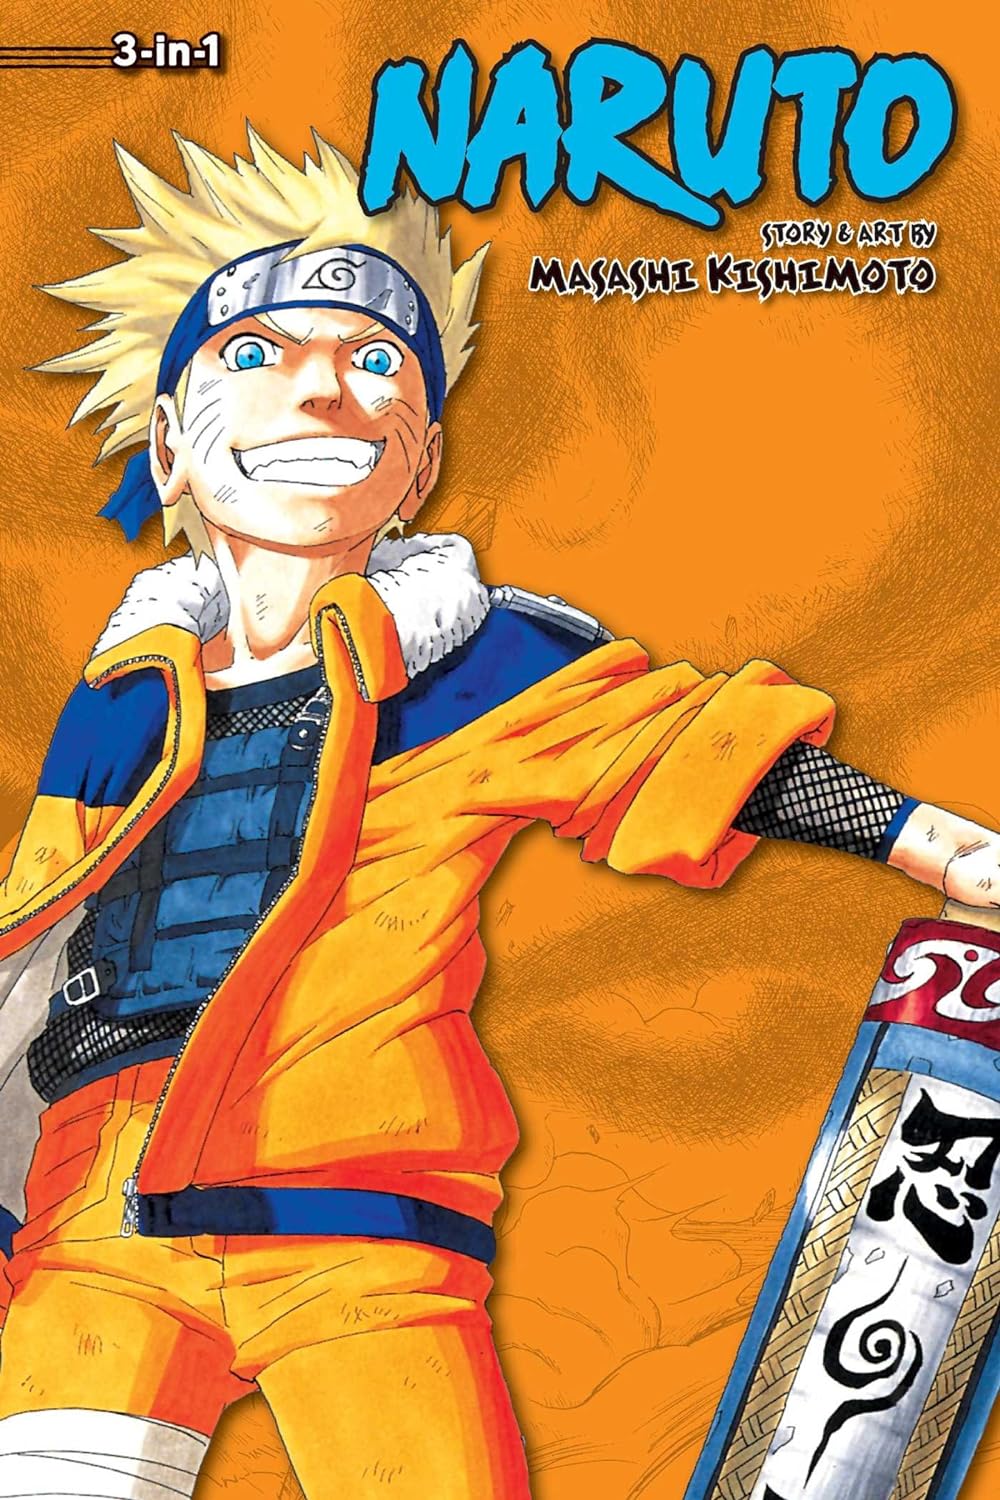 Naruto (3-in-1 Edition) Vol. 4 (Vol. 10, 11 & 12)